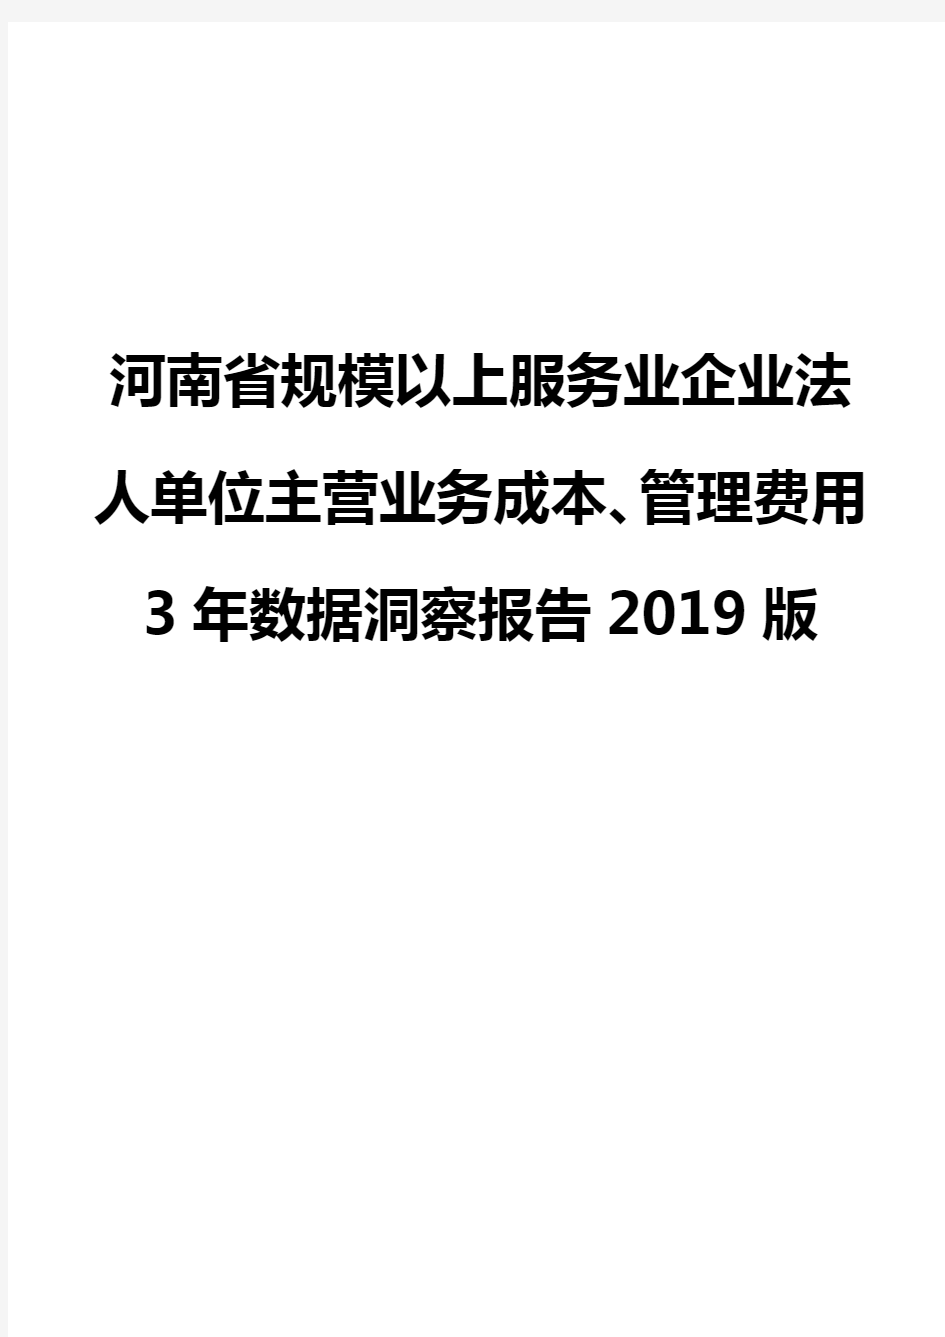 河南省规模以上服务业企业法人单位主营业务成本、管理费用3年数据洞察报告2019版